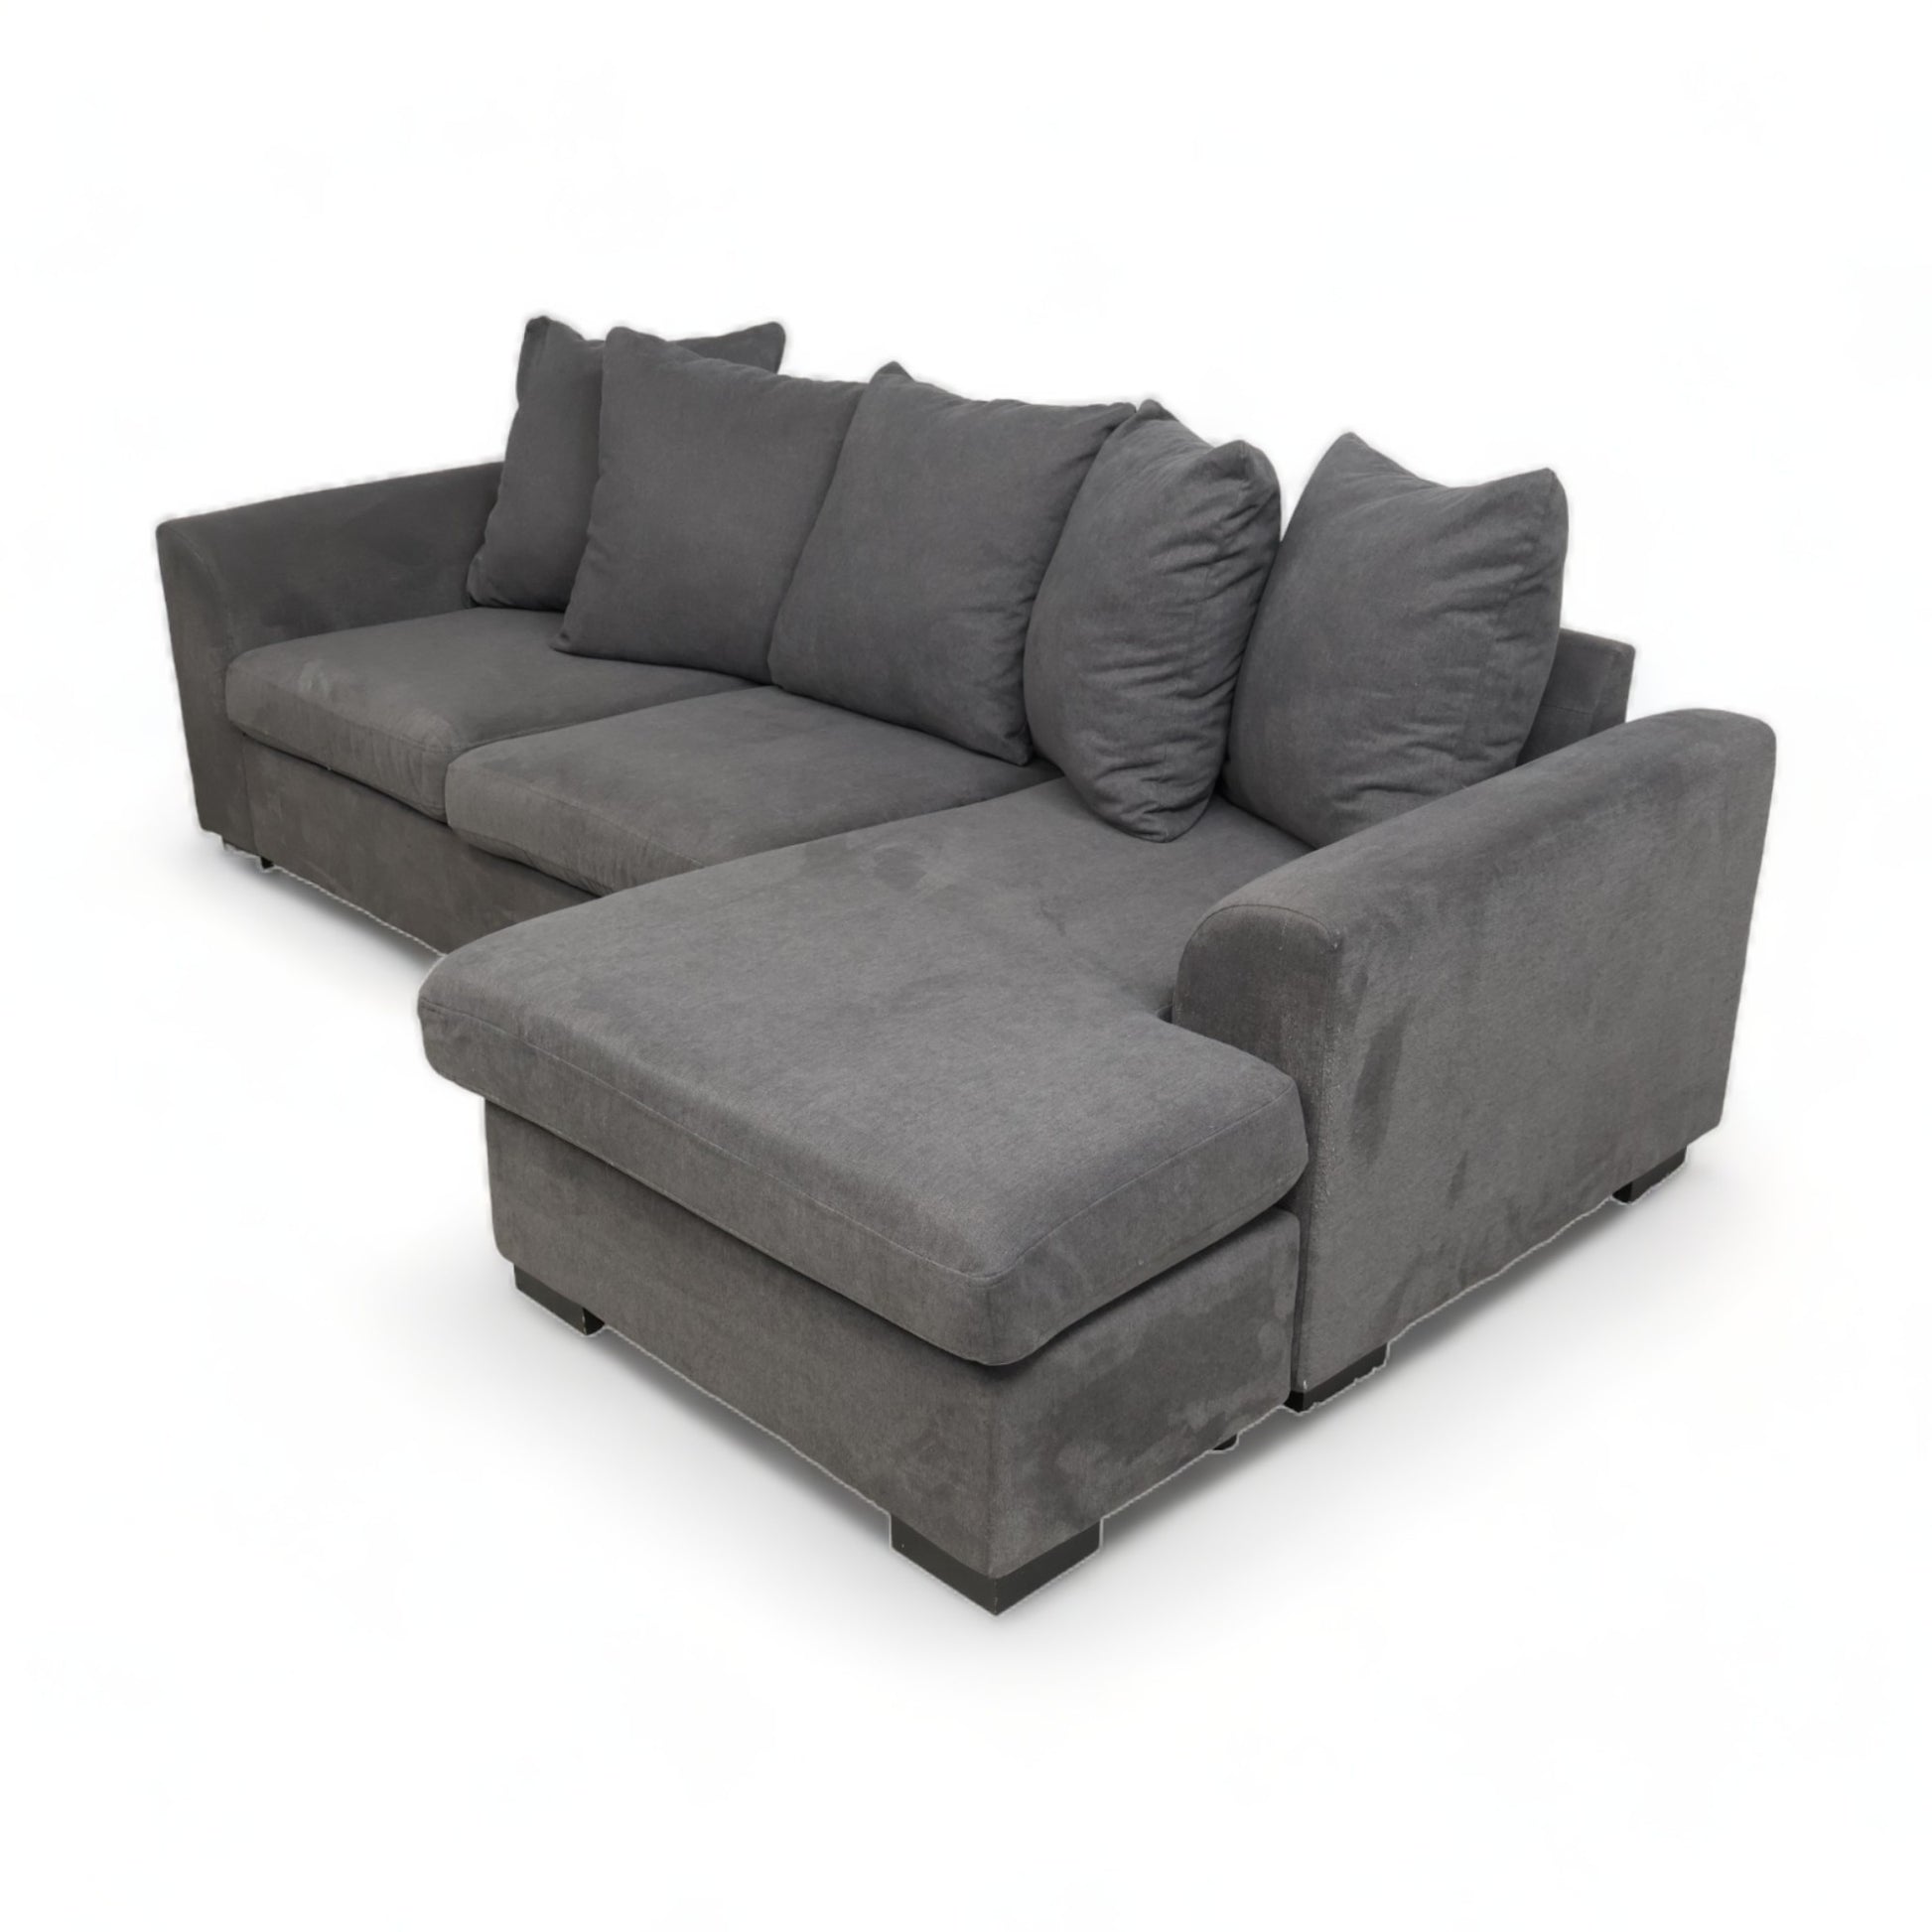 Nyrenset | Mørk grå sofa med sjeselong